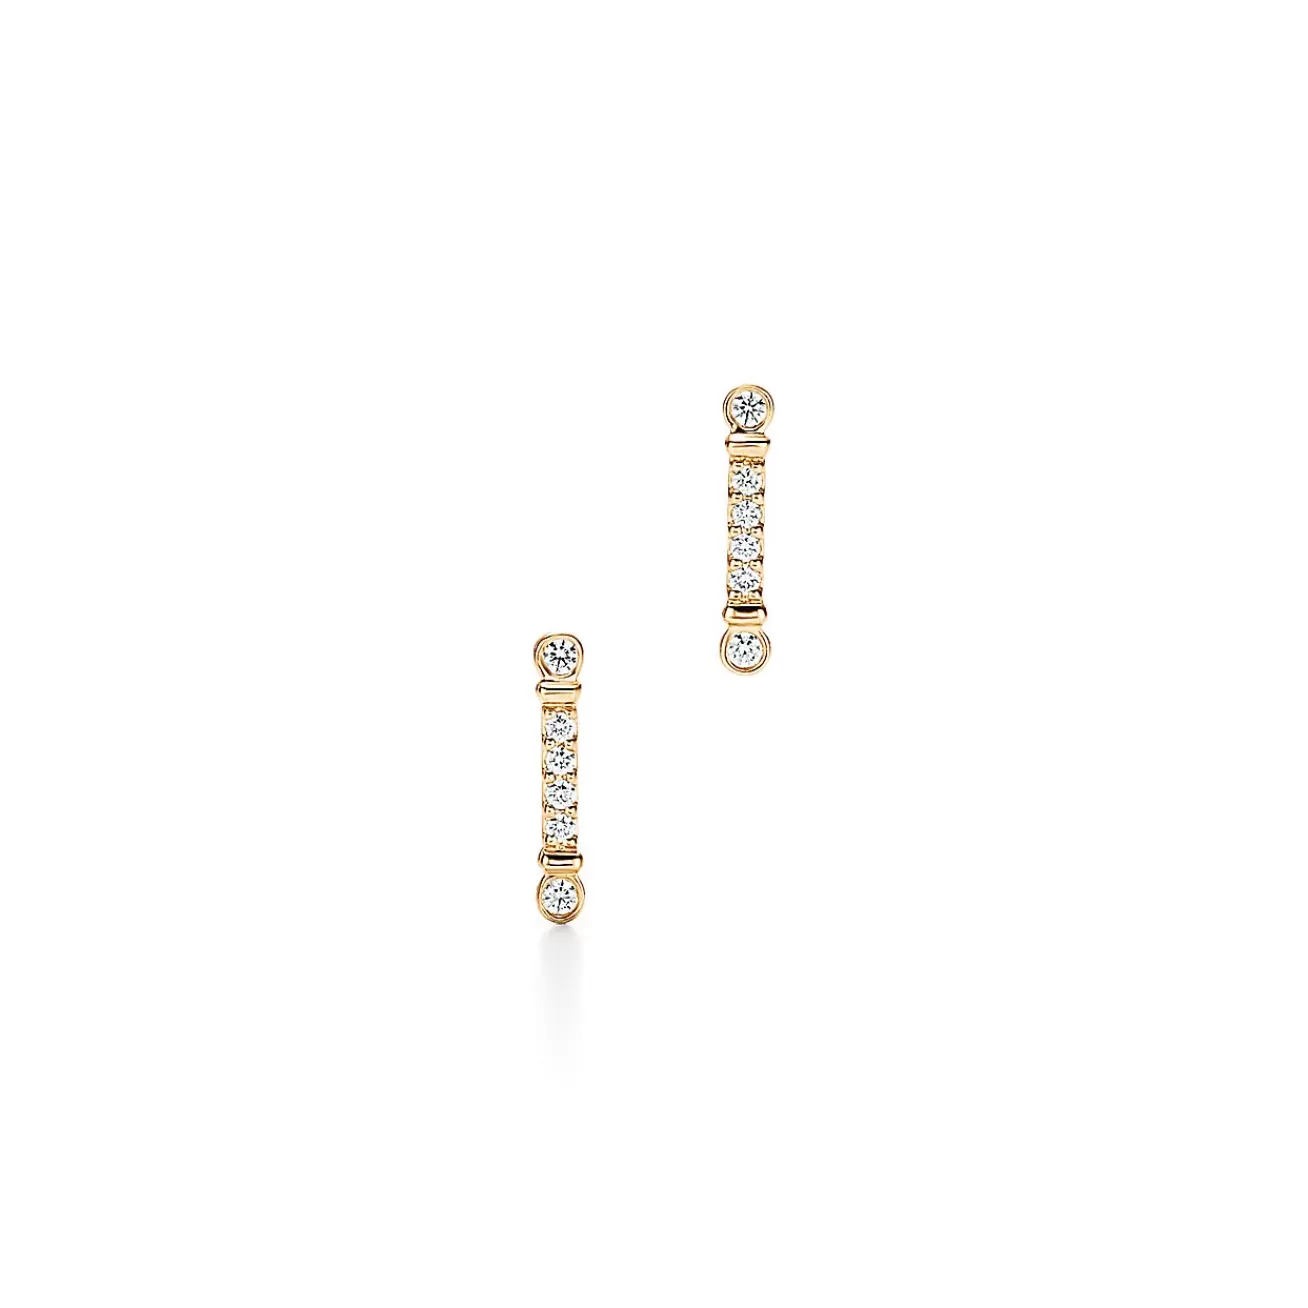 Tiffany & Co. Tiffany Fleur de Lis key bar earrings in 18k gold with diamonds. | ^ Earrings | Gifts for Her